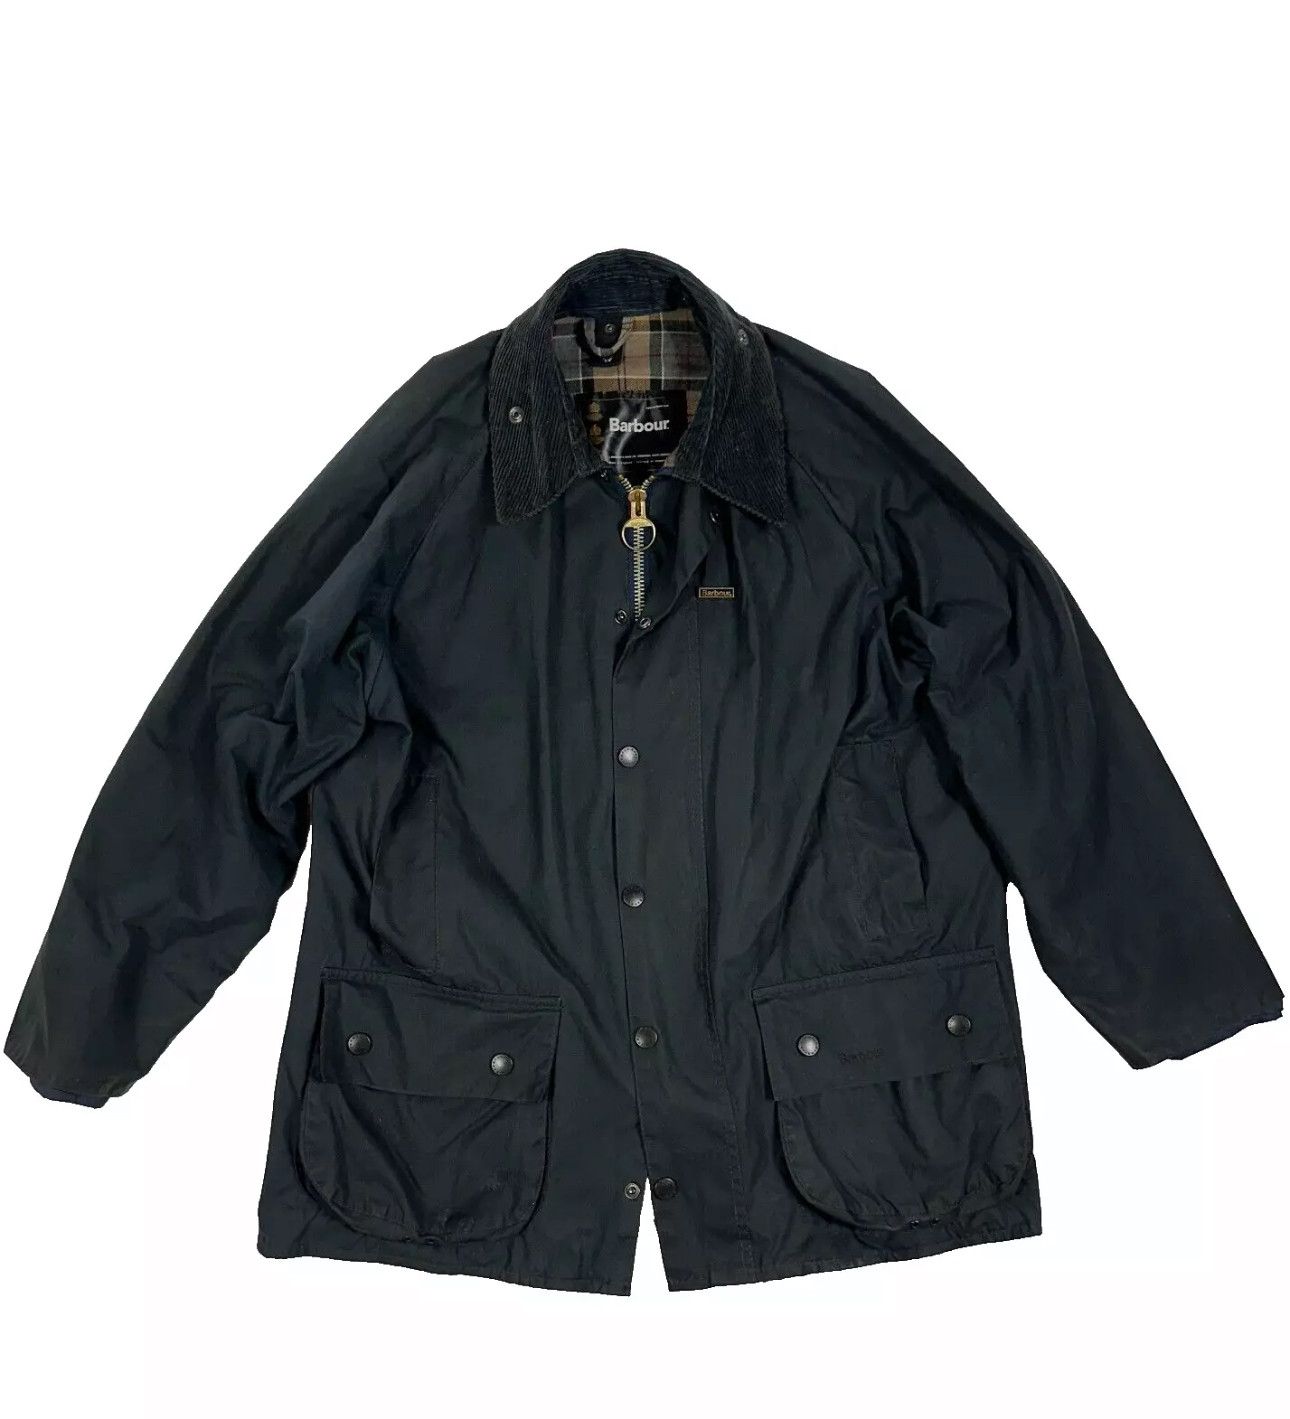 Barbour Barbour Beaufort Waxxed Cotton Jacket size C42 / 107 cm 